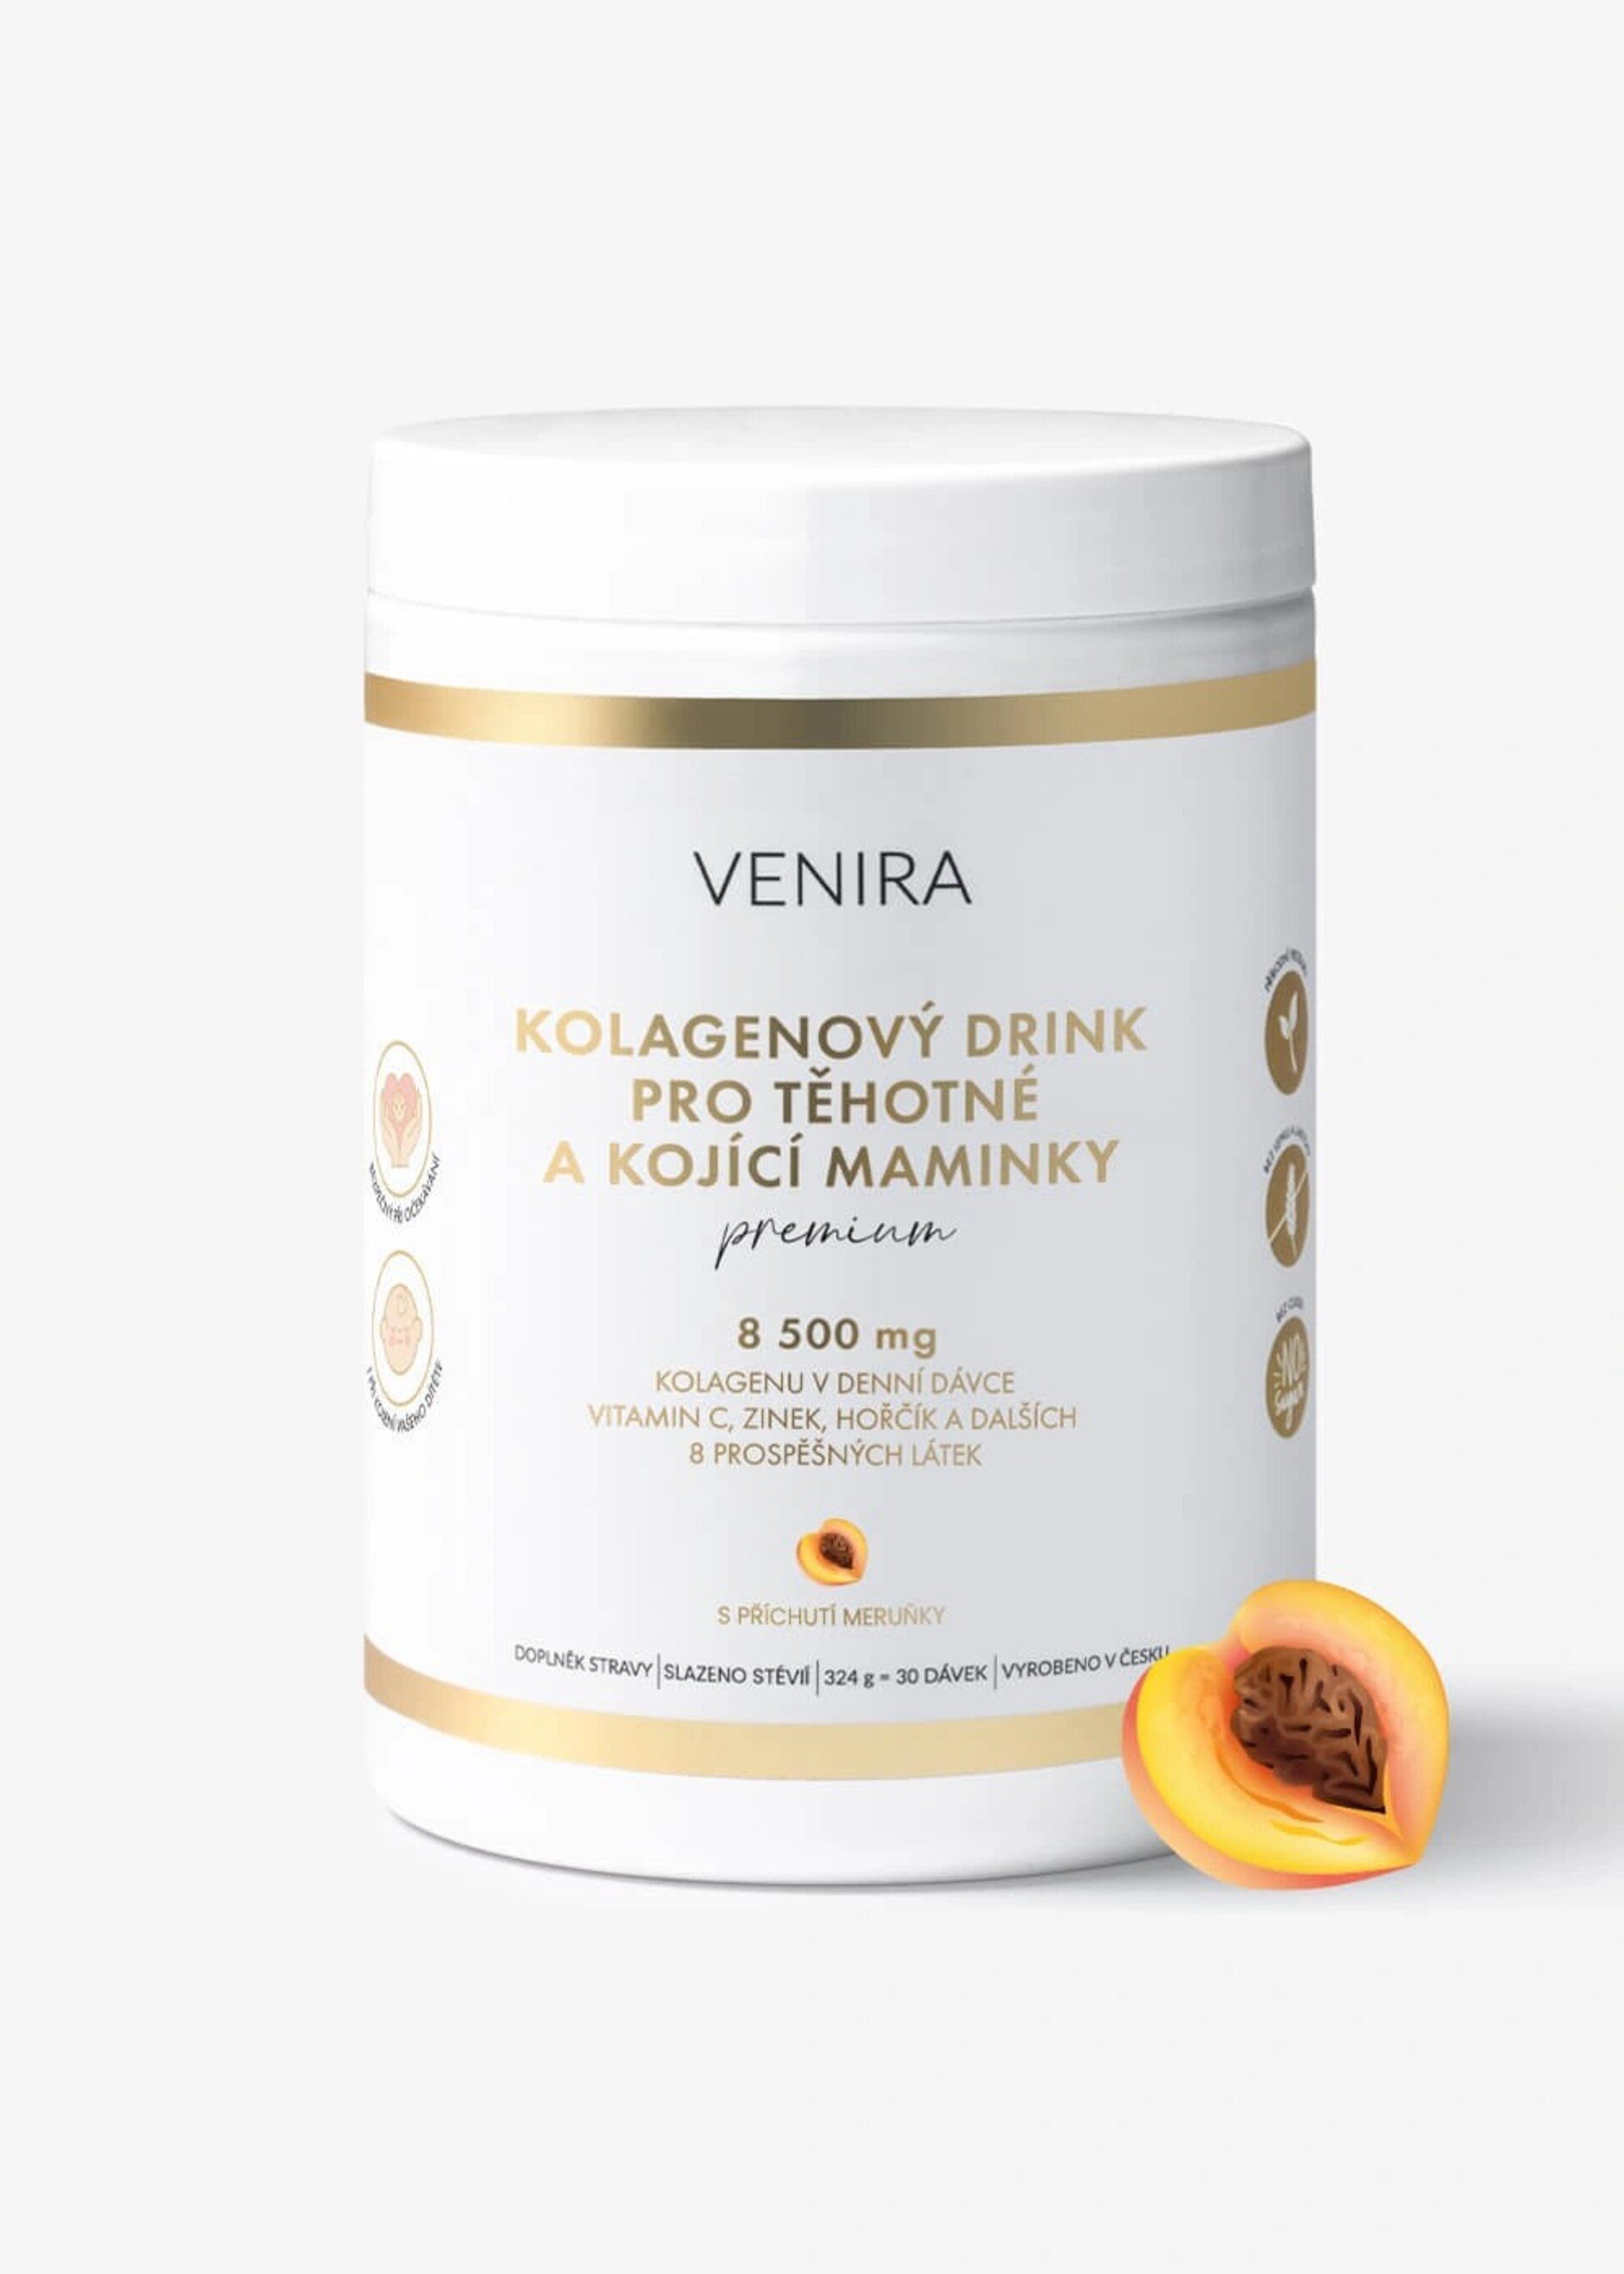 Venira Premium kolagenový drink pro těhotné a kojící maminky meruňka 324 g